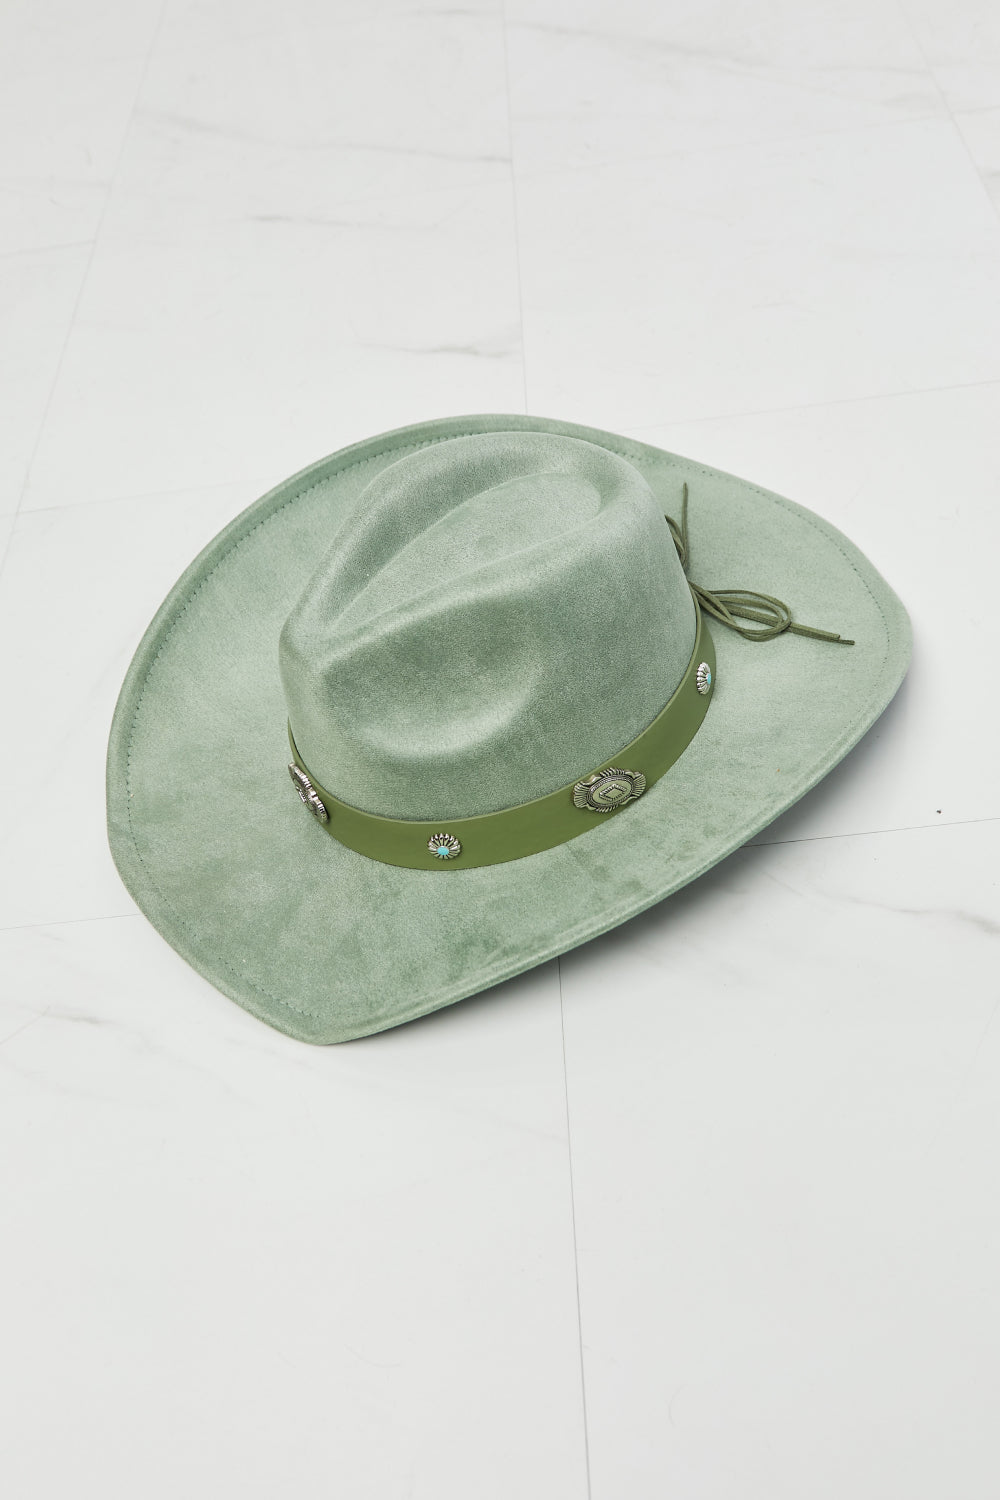 Fame Mint Condition Cowboy Hat